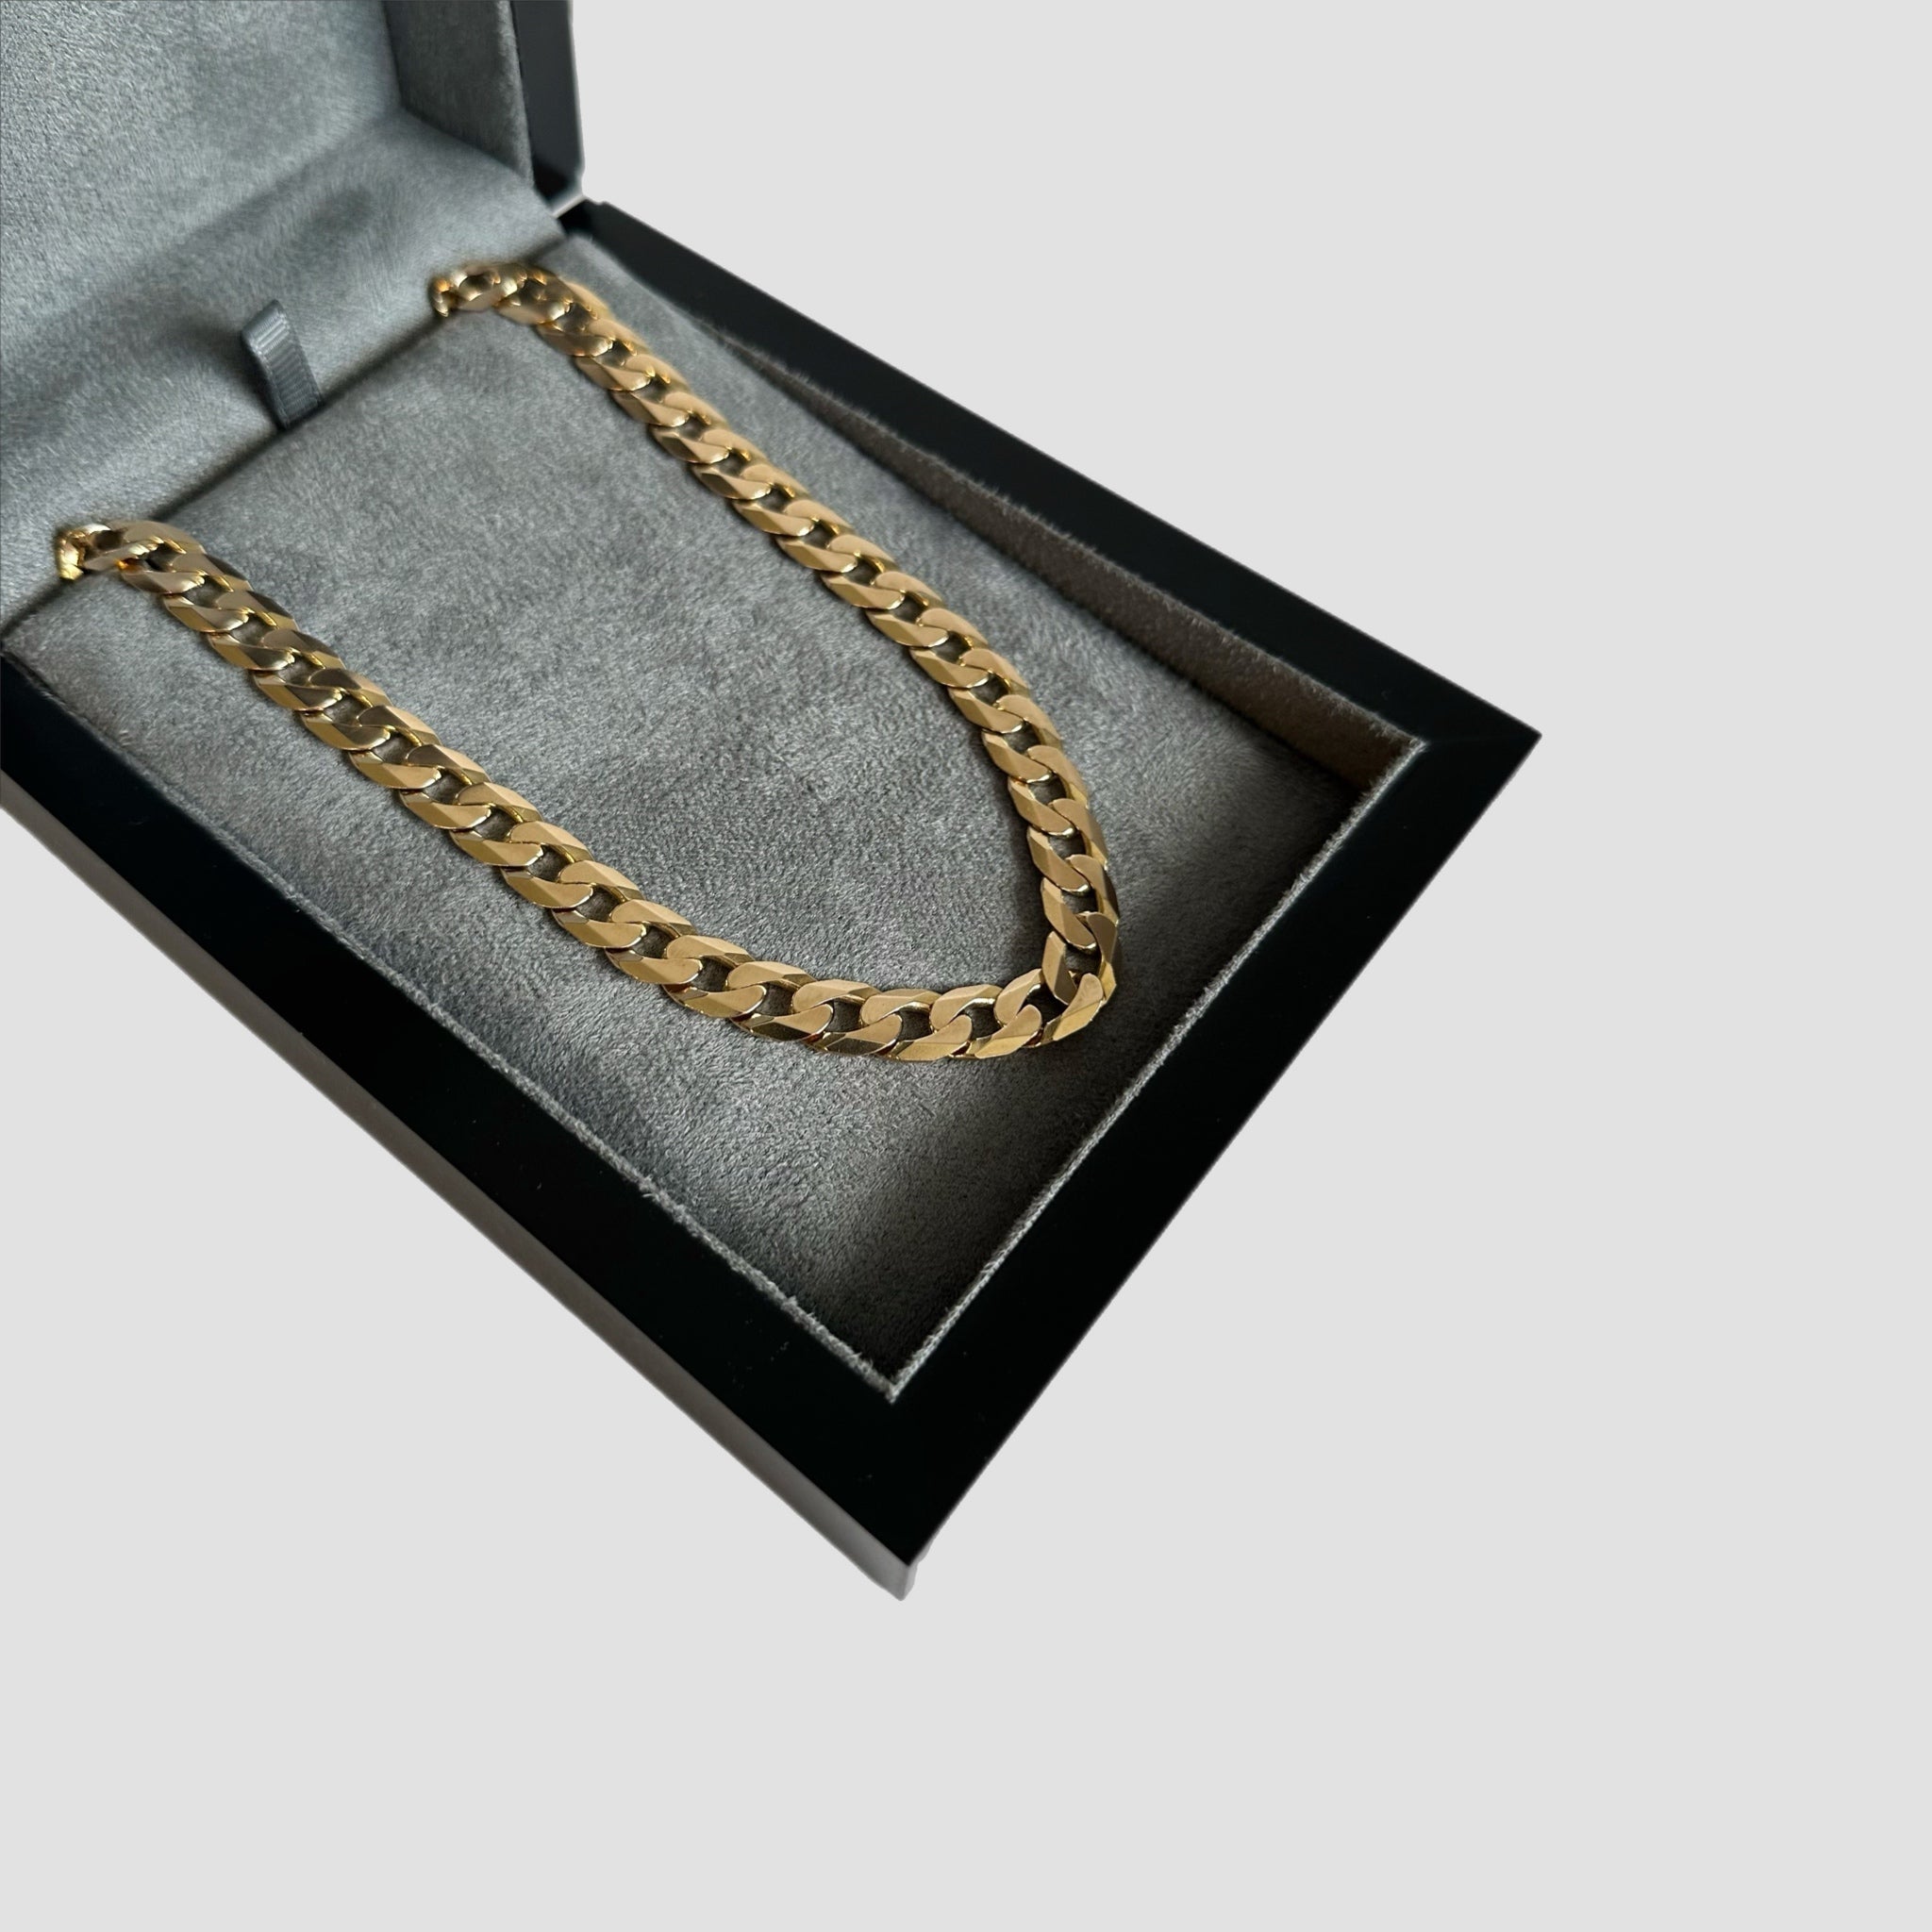 9ct Gold Italian Curb Chain